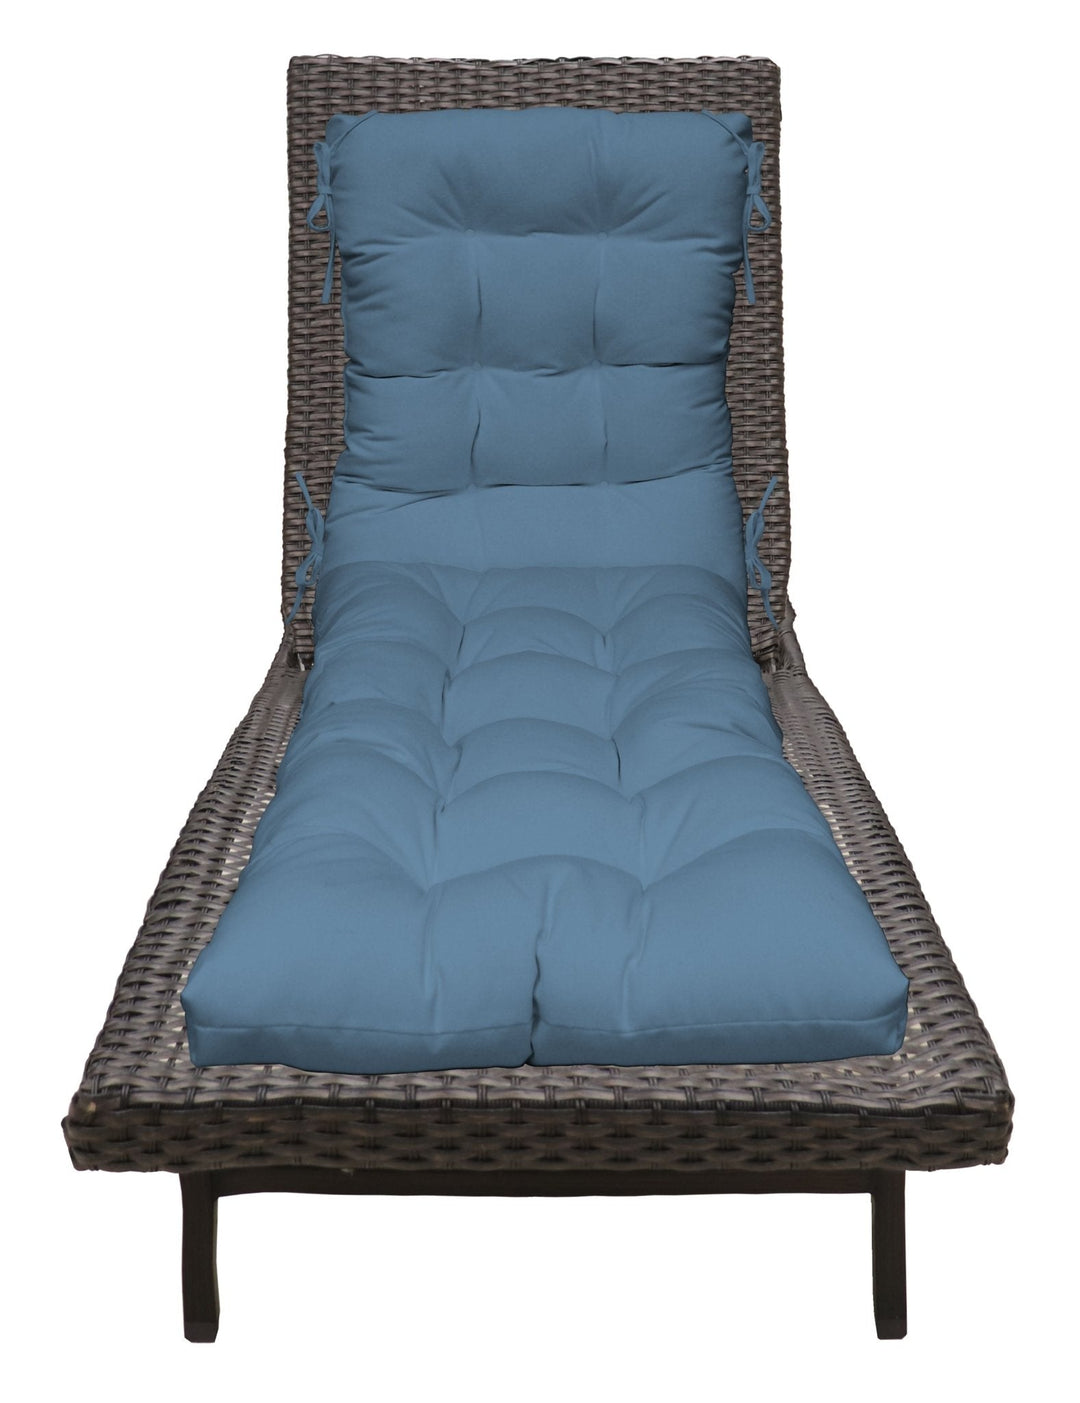 Chaise Lounge Chair Cushion, Tufted, 72" H x 22" W", Sunbrella Solids - RSH Decor